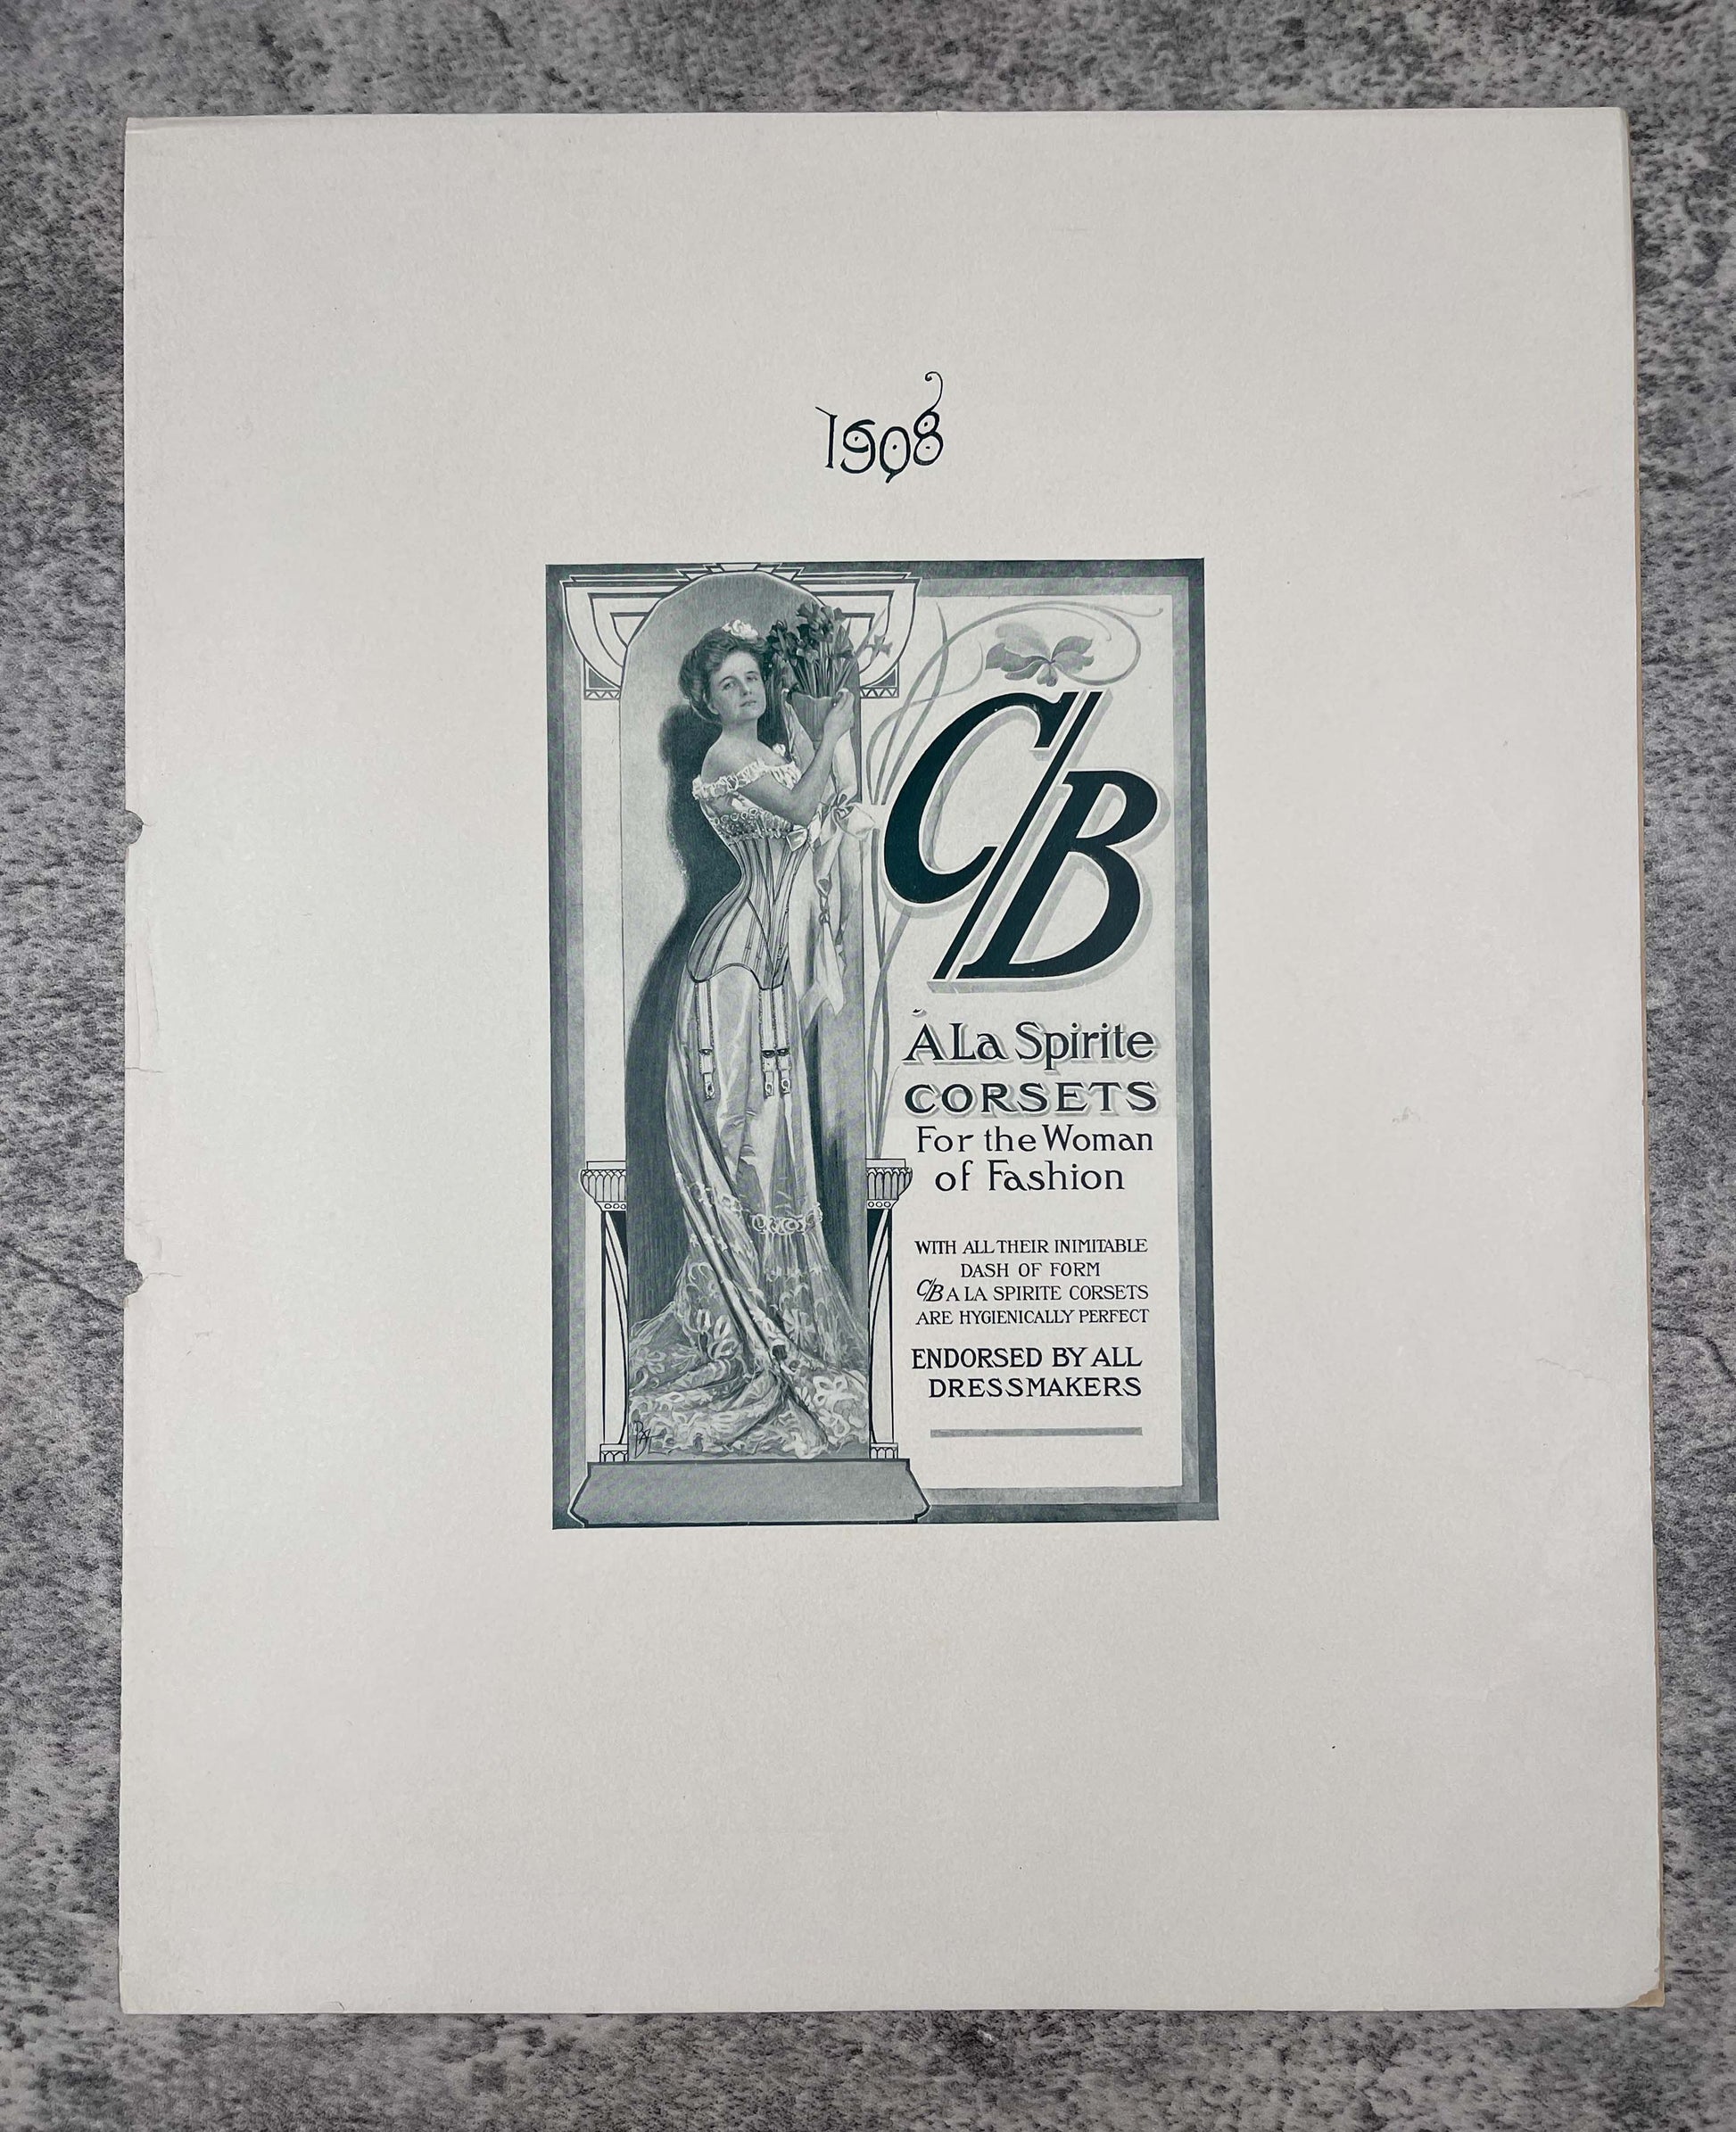 Scarce C/B A La Spirite Corsets Ad Proof / 1908 - Precious Cache